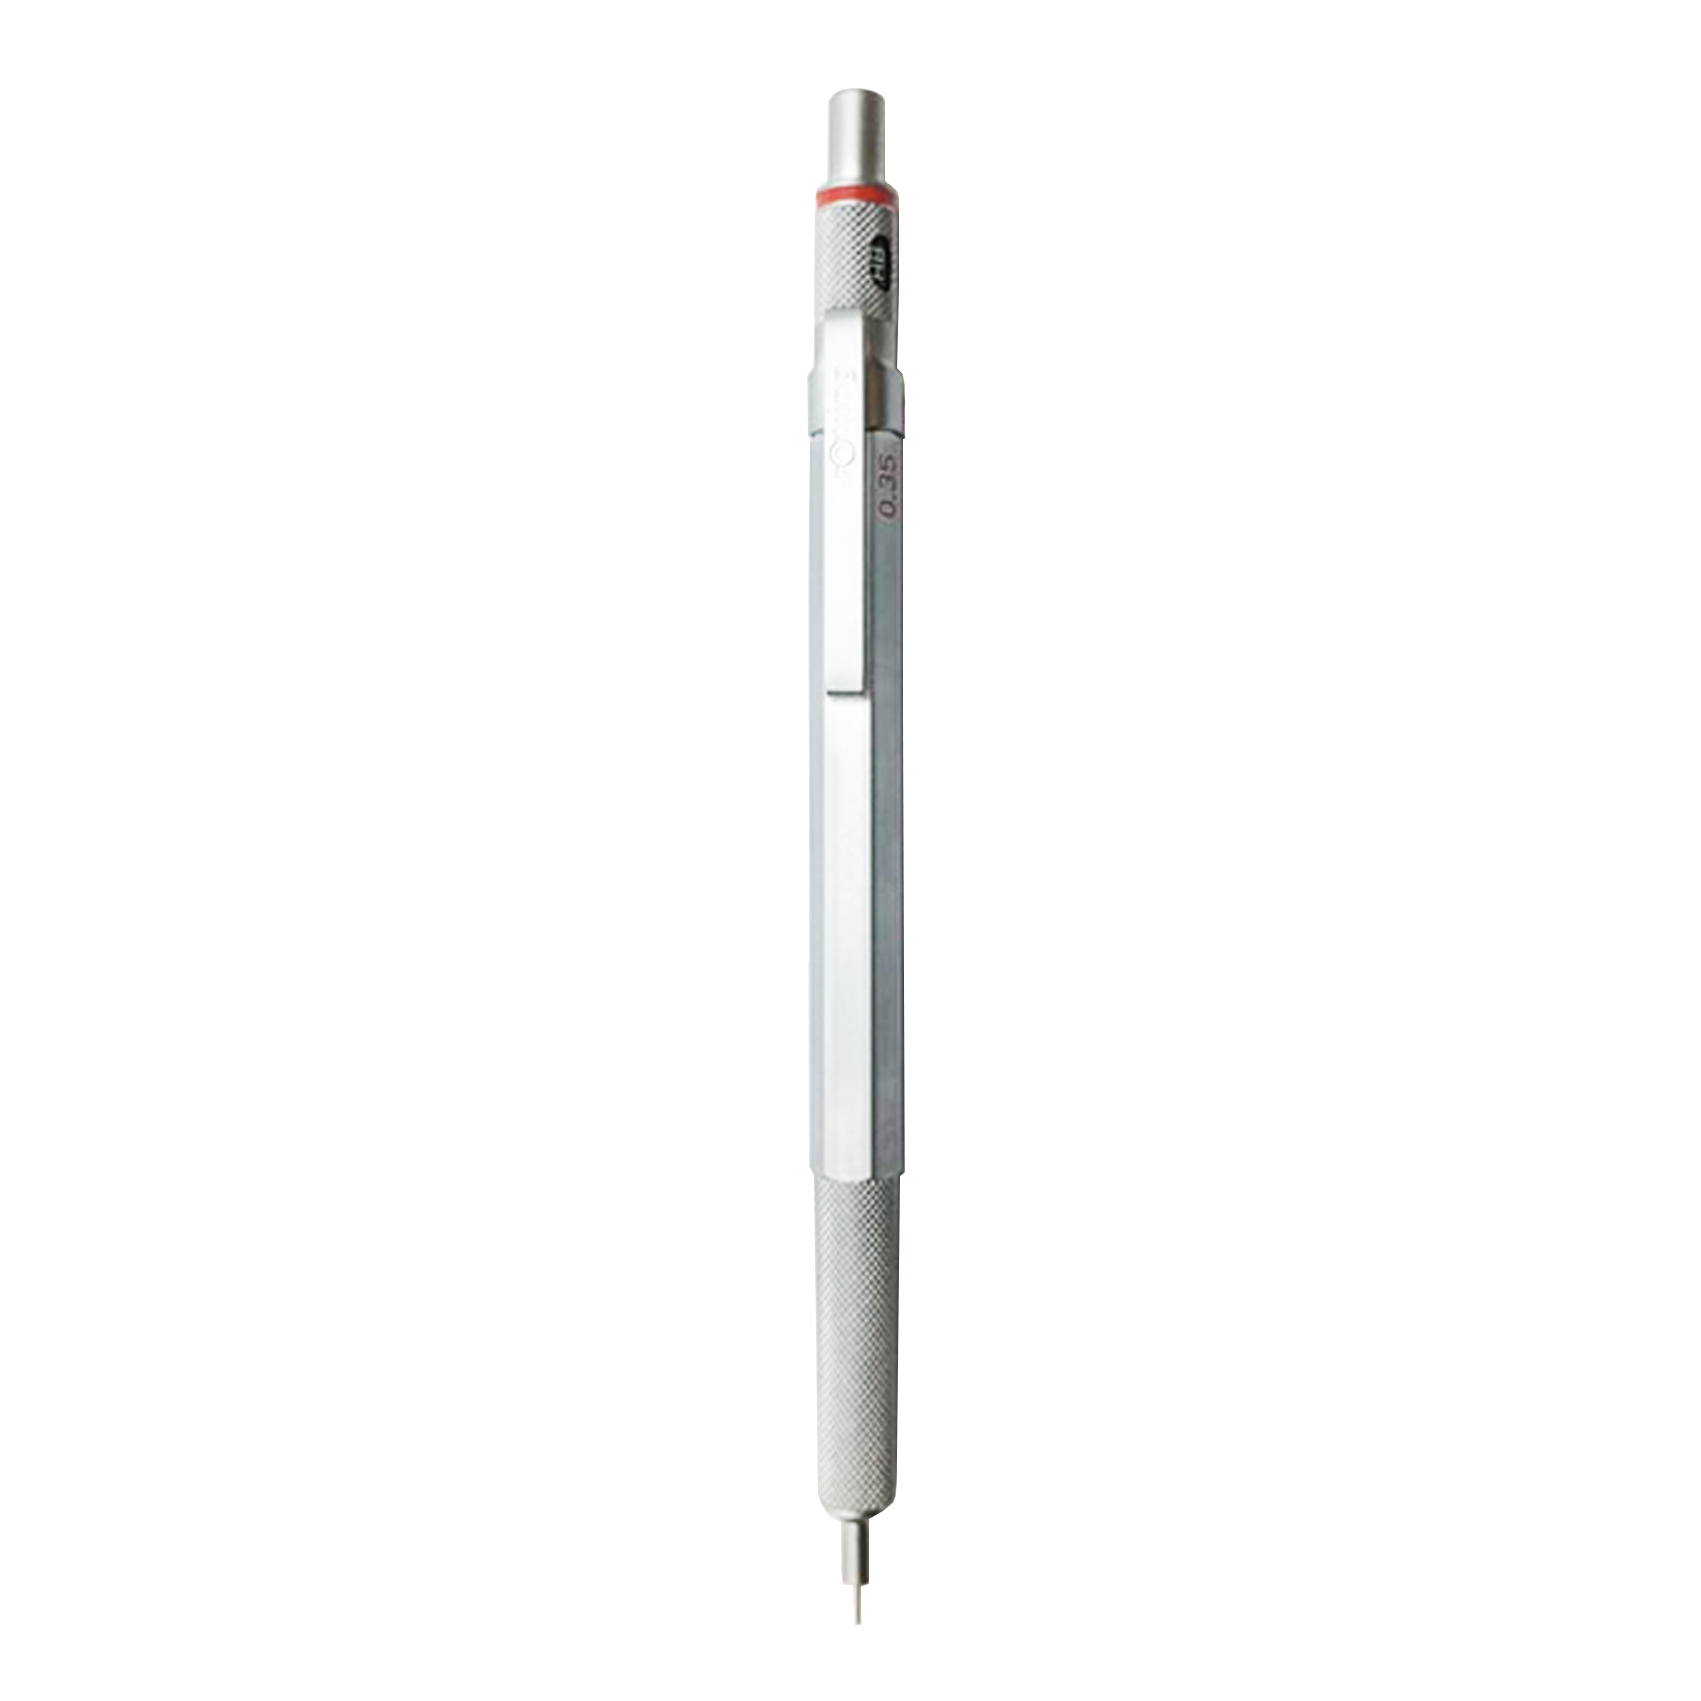 مداد نوکی 0.35 میلی متری روترینگ مدل RN600 کد 615